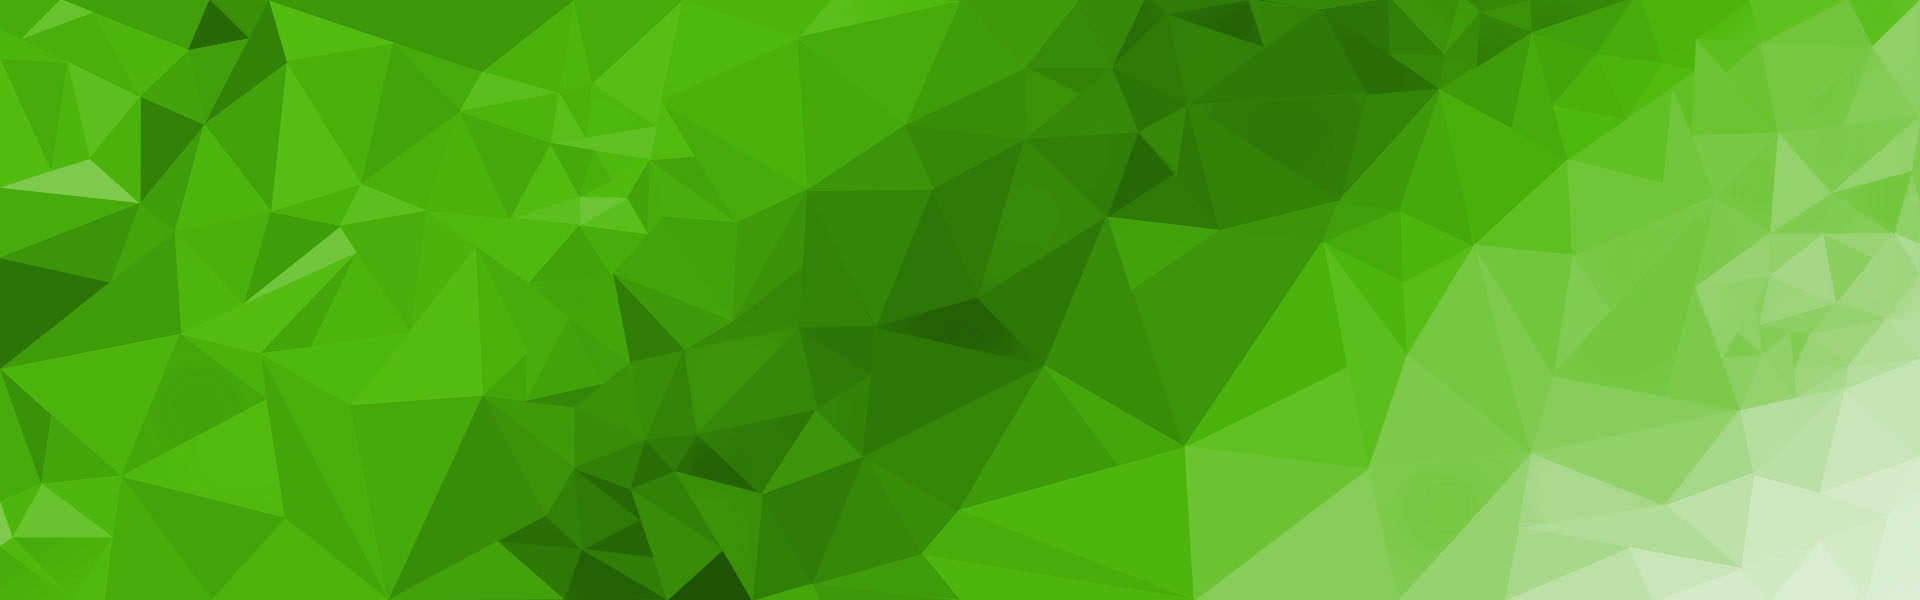 Grün gefärbtes Polygon Muster